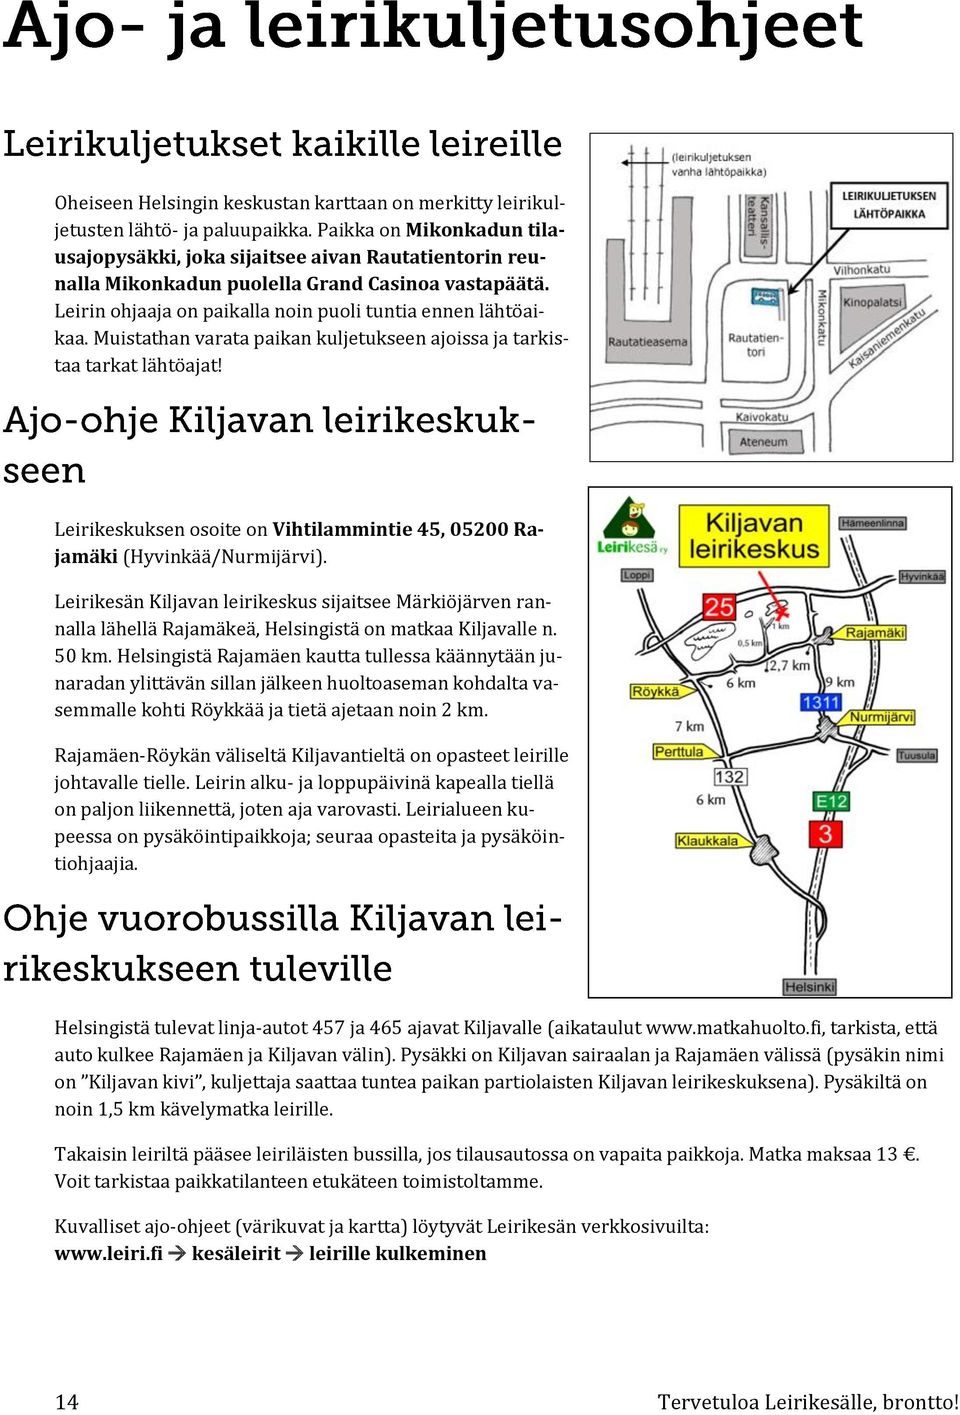 Muistathan varata paikan kuljetukseen ajoissa ja tarkistaa tarkat lähtöajat! Leirikeskuksen osoite on Vihtilammintie 45, 05200 Rajamäki (Hyvinkää/Nurmijärvi).